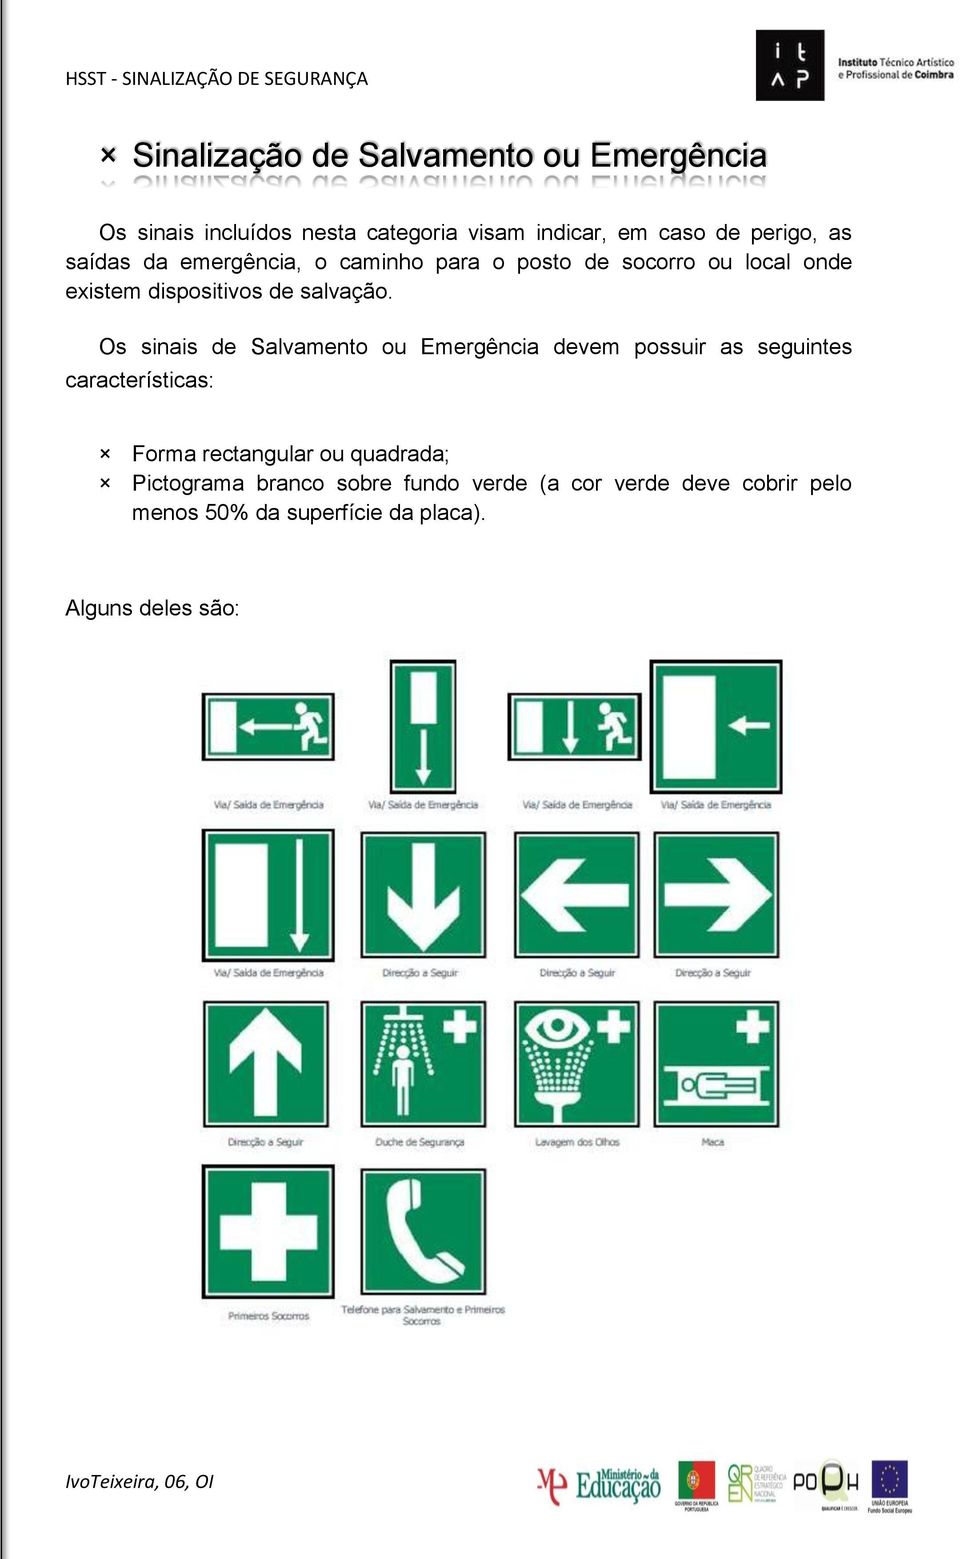 Os sinais de Salvamento ou Emergência devem possuir as seguintes características: Forma rectangular ou